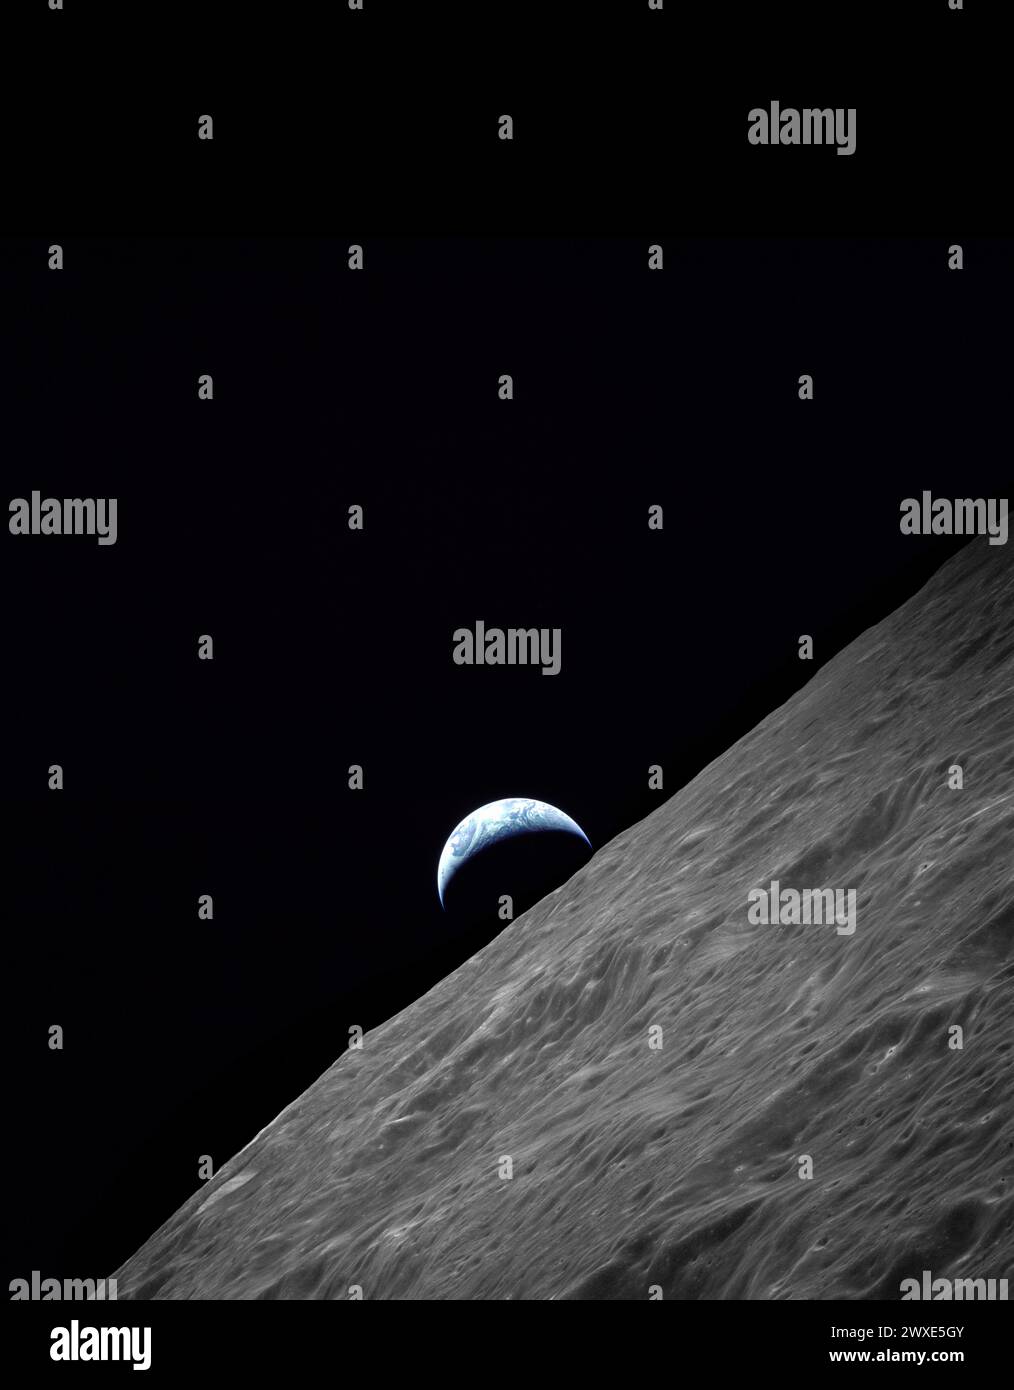 Erdaufgang über dem Mond, aufgenommen während Apollo 17's Reise zum Mond. Nasas letzte bemannte Mondmission. Blick auf die Mondsichel, die sich über dem Mond-Horizont über dem Ritz-Krater erhebt. Das Bild wurde 1972 während der Apollo 17-Mission auf der Revolution 66 aufgenommen. Das Original-Filmmagazin wurde mit PP beschriftet. Filmtyp war SO-368 Color Ektachrome MS CEX, Color Reversal, 250-mm-Objektiv, Länge 97,6 Ost, Azimut 263, Höhe 113 km Ein optimiertes NASA-Bild. Quelle: NASA-Bild enthält einen schwarzen Raum am oberen Rand des Bildes. Das ursprüngliche Bildformat war quadratisch. Stockfoto